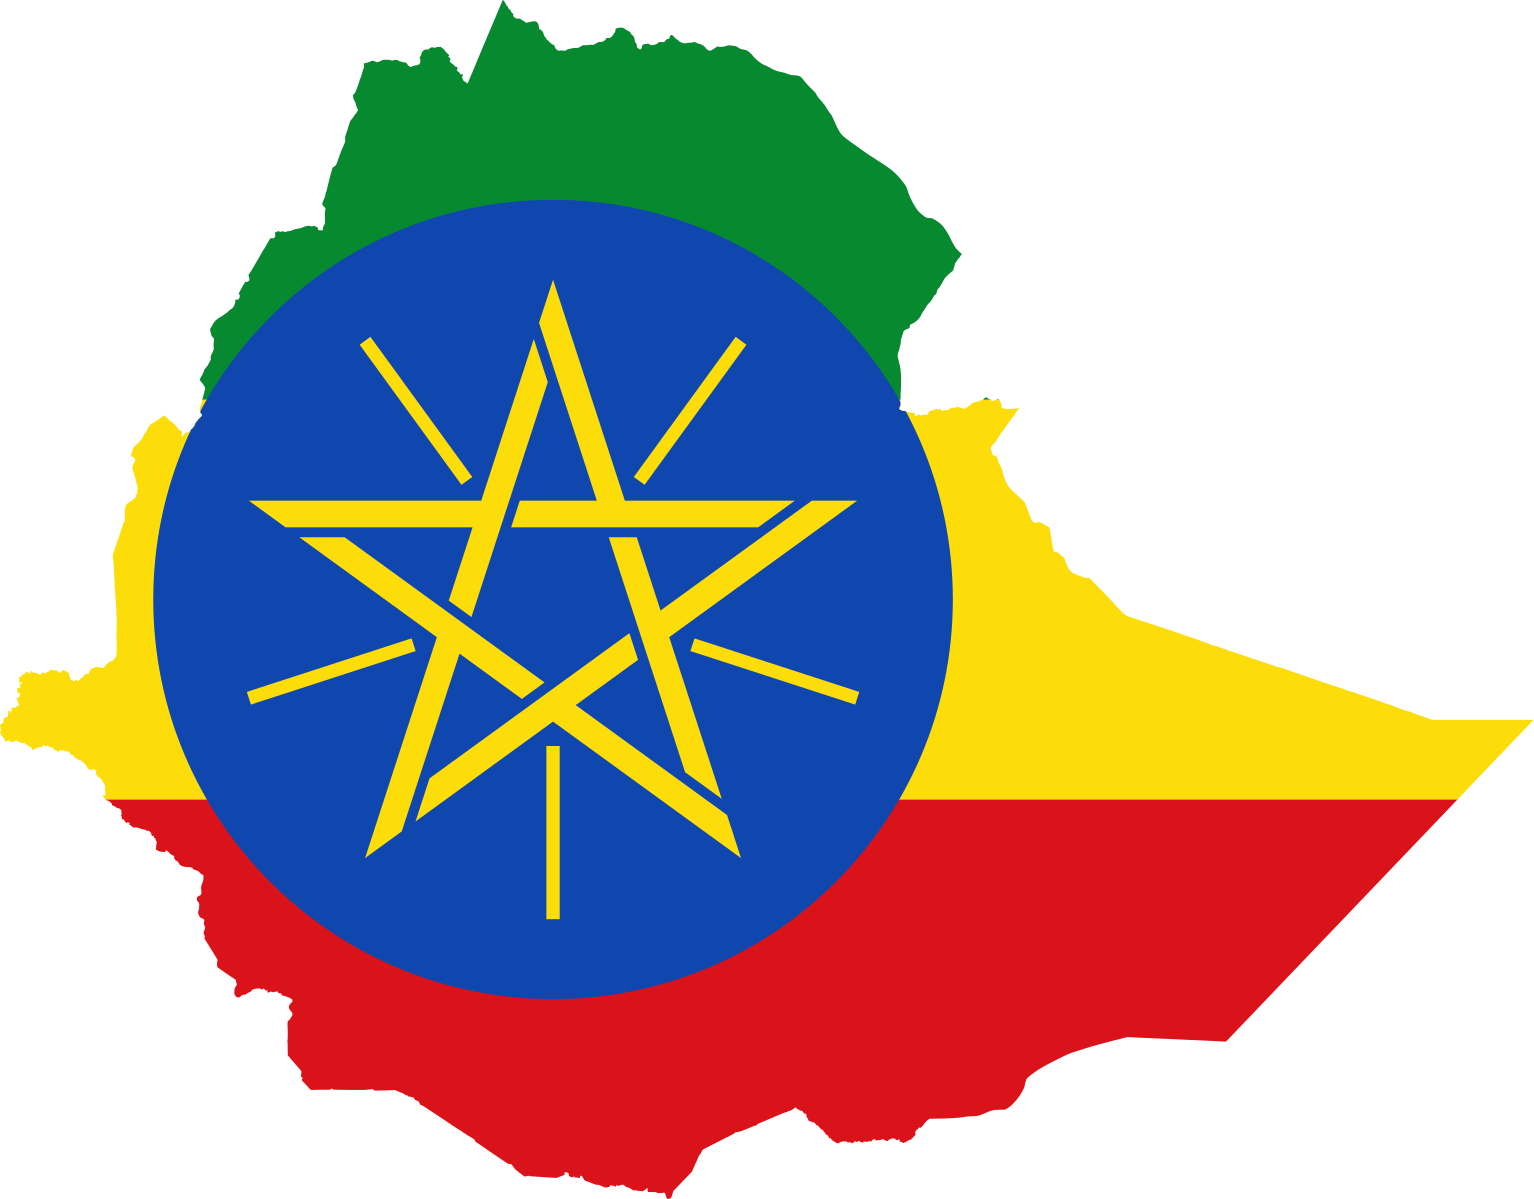 Qorshaha ciidamada badda Ethiopia iyo halista uga soo socota Somalia (Dhageyso)